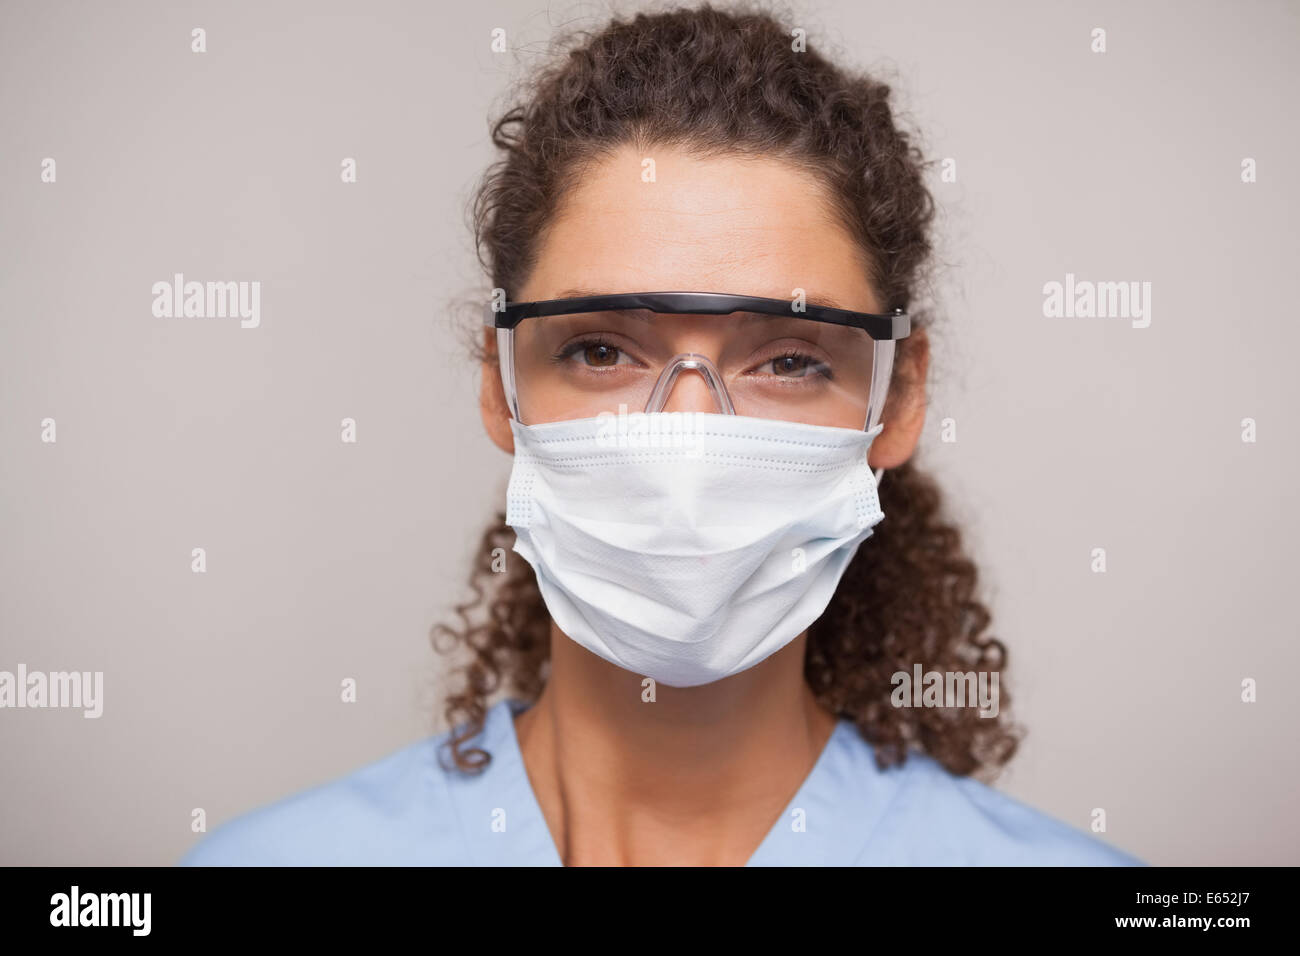 Dentiste dans un masque chirurgical et des lunettes looking at camera Banque D'Images